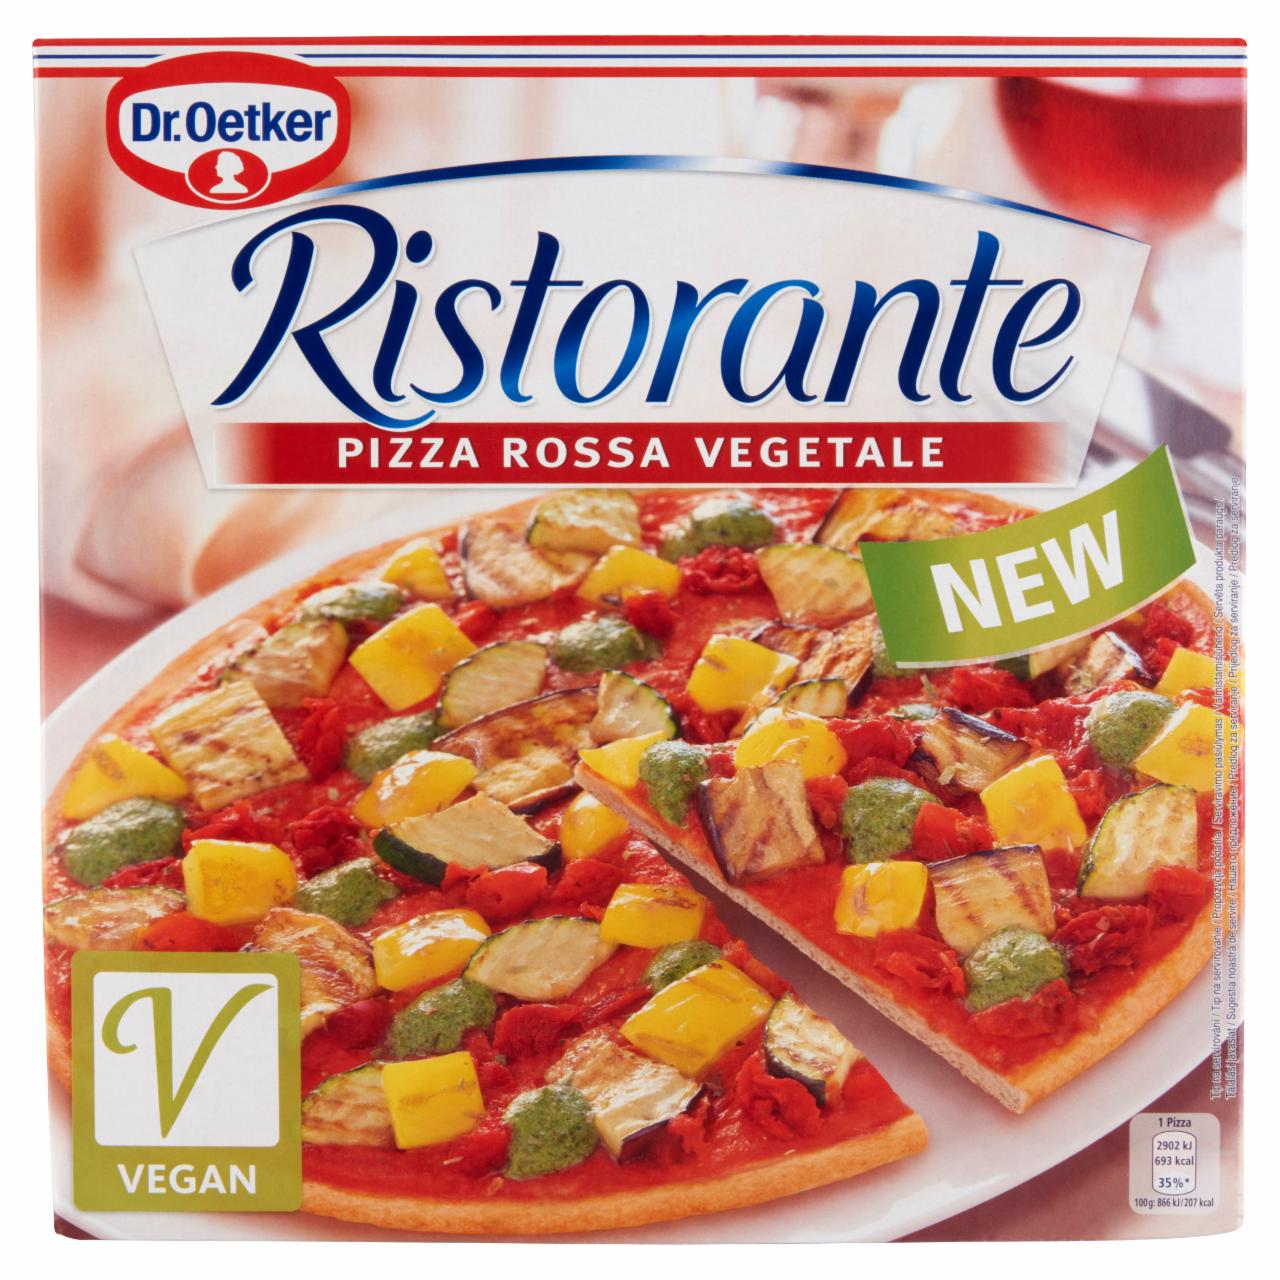 Képek - Dr. Oetker Ristorante Pizza Rossa Vegetale gyorsfagyasztott vegán pizza 335 g